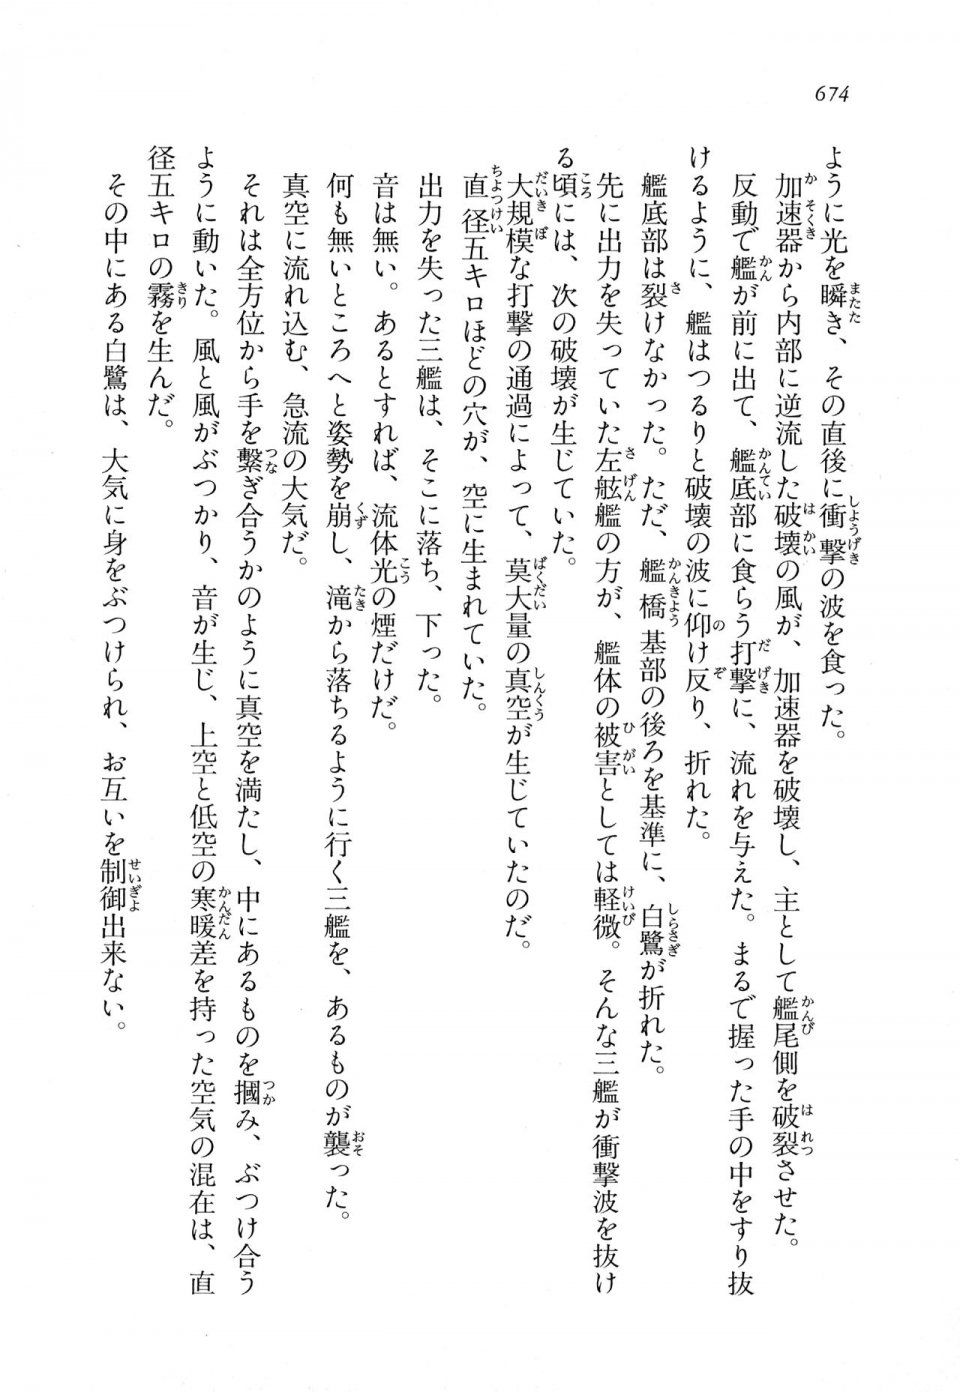 Kyoukai Senjou no Horizon LN Vol 11(5A) - Photo #674